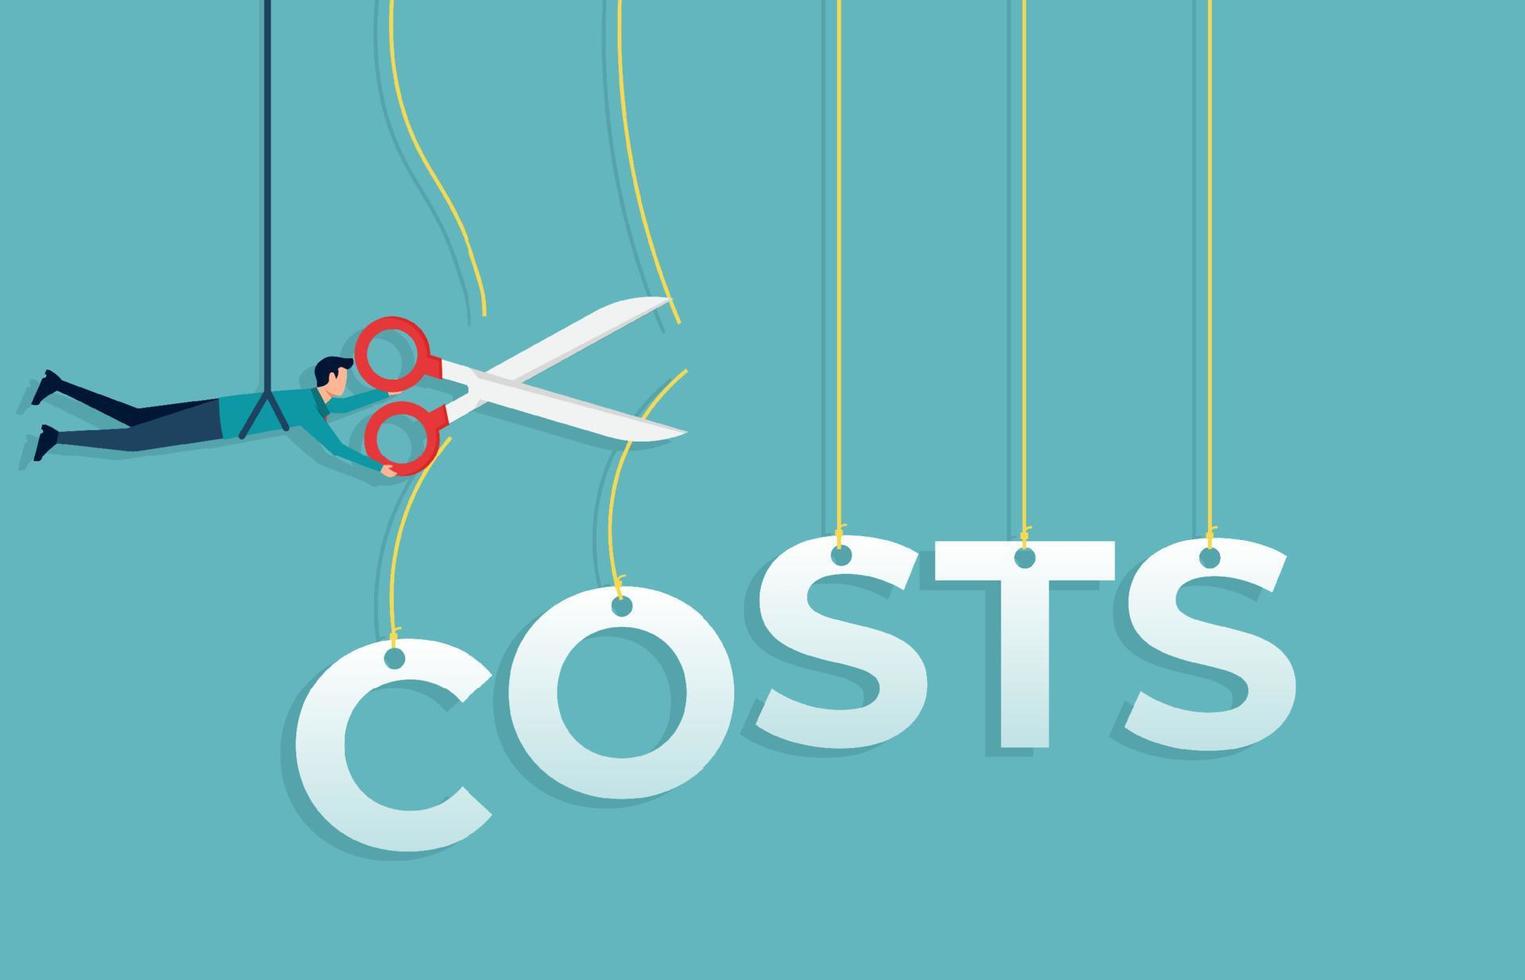 conception de concept de réduction des coûts. homme d'affaires coupant le mot de coût avec des ciseaux. illustration vectorielle plane de réduction des coûts, de rentabilité et d'économies de coûts vecteur